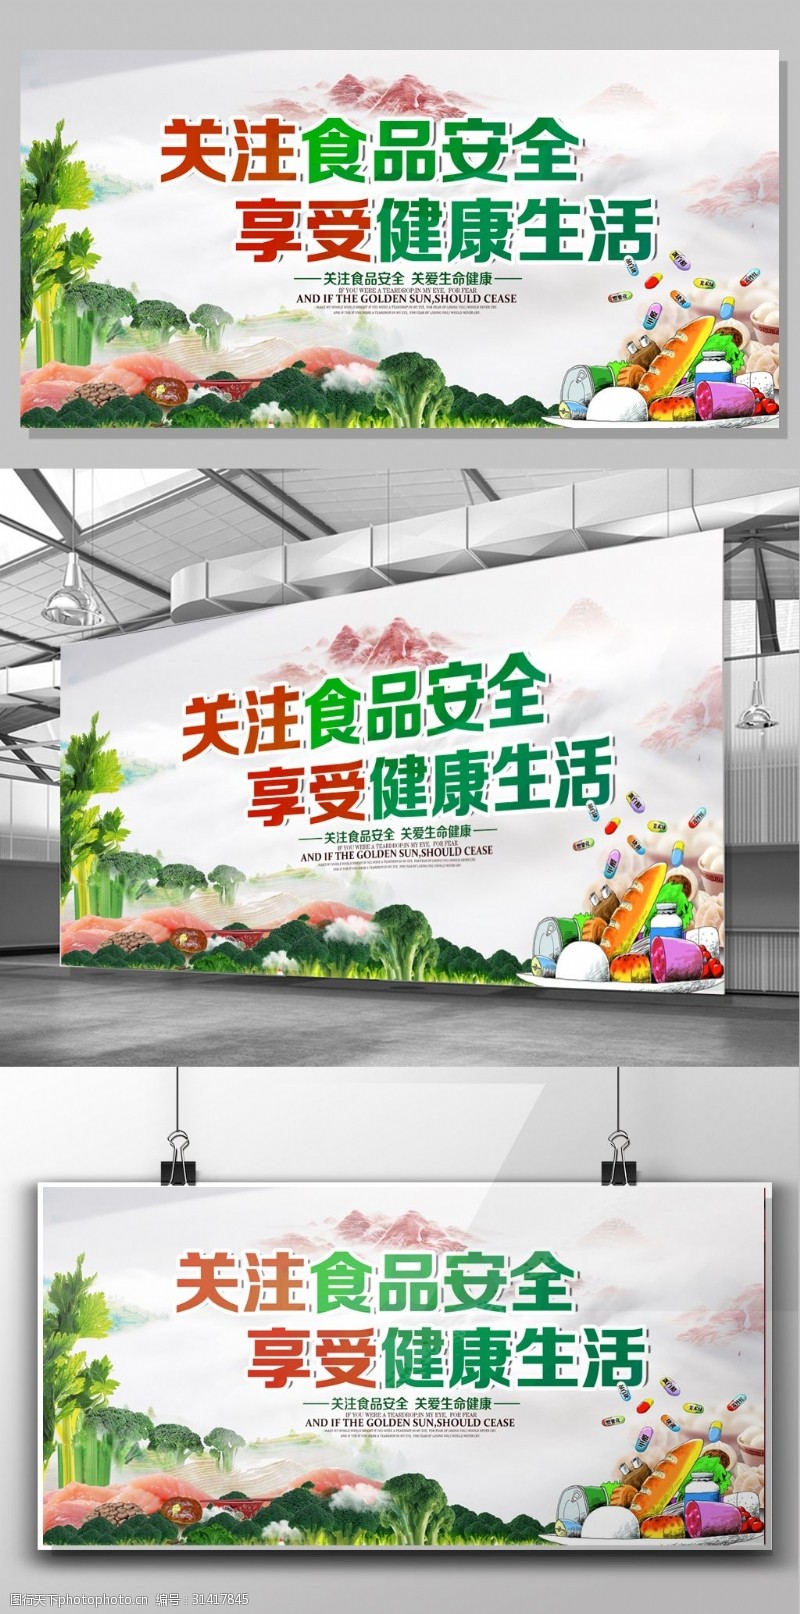 食品安全宣传海报关注食品安全享受健康生活公益宣传展板